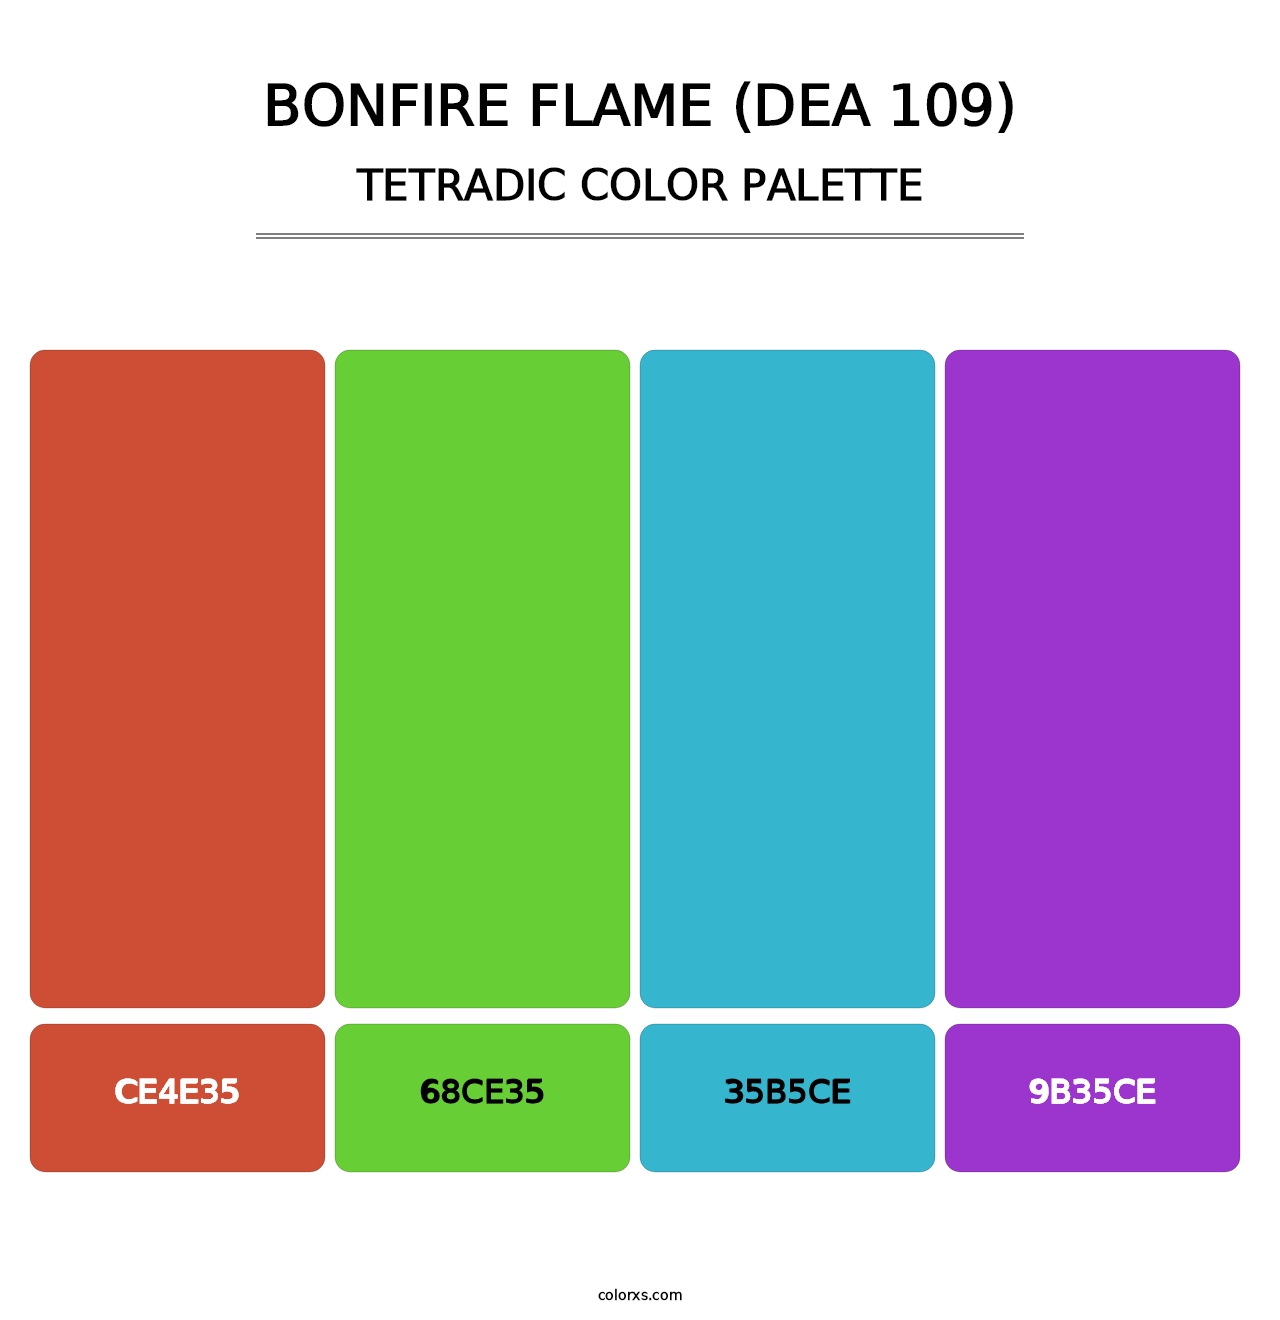 Bonfire Flame (DEA 109) - Tetradic Color Palette